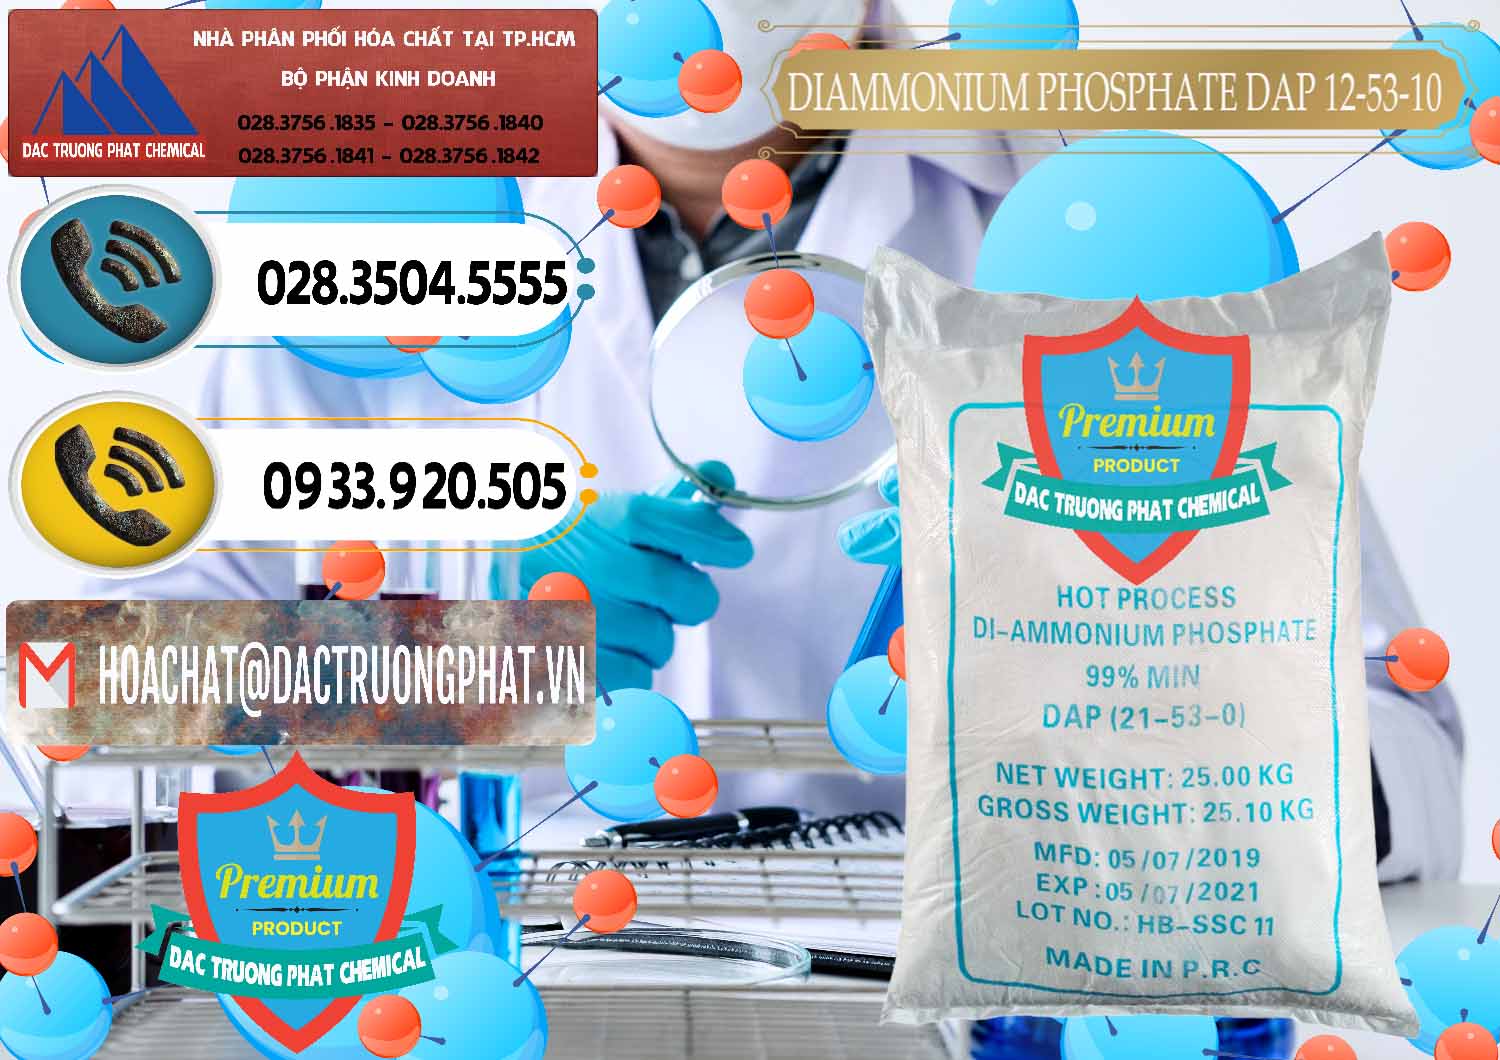 Công ty chuyên cung cấp & bán DAP - Diammonium Phosphate Trung Quốc China - 0319 - Chuyên kinh doanh - cung cấp hóa chất tại TP.HCM - hoachatdetnhuom.vn